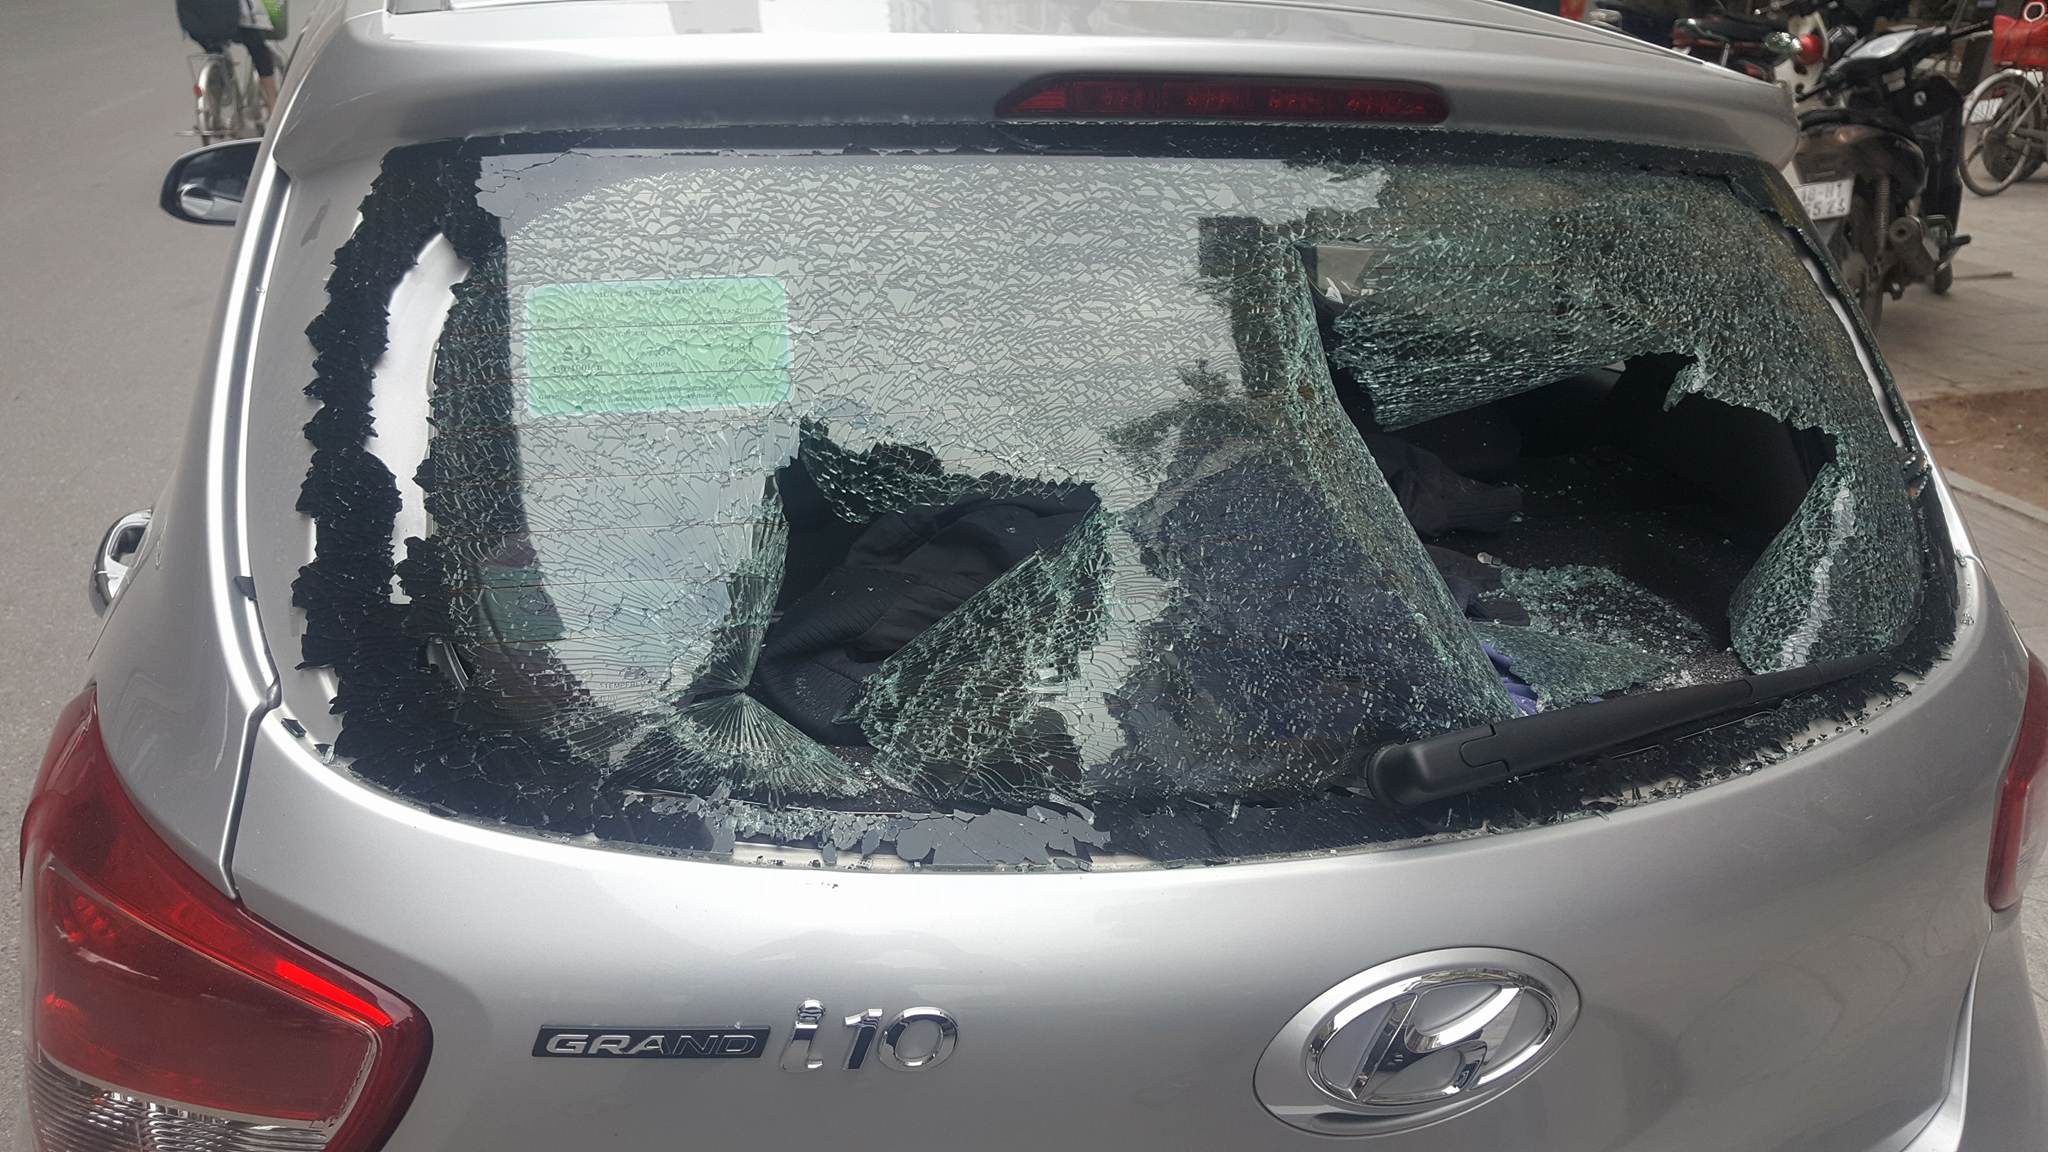 Hà Nội: Xe Hyundai bất ngờ bị bình khí hàn “đâm” thủng kính sau